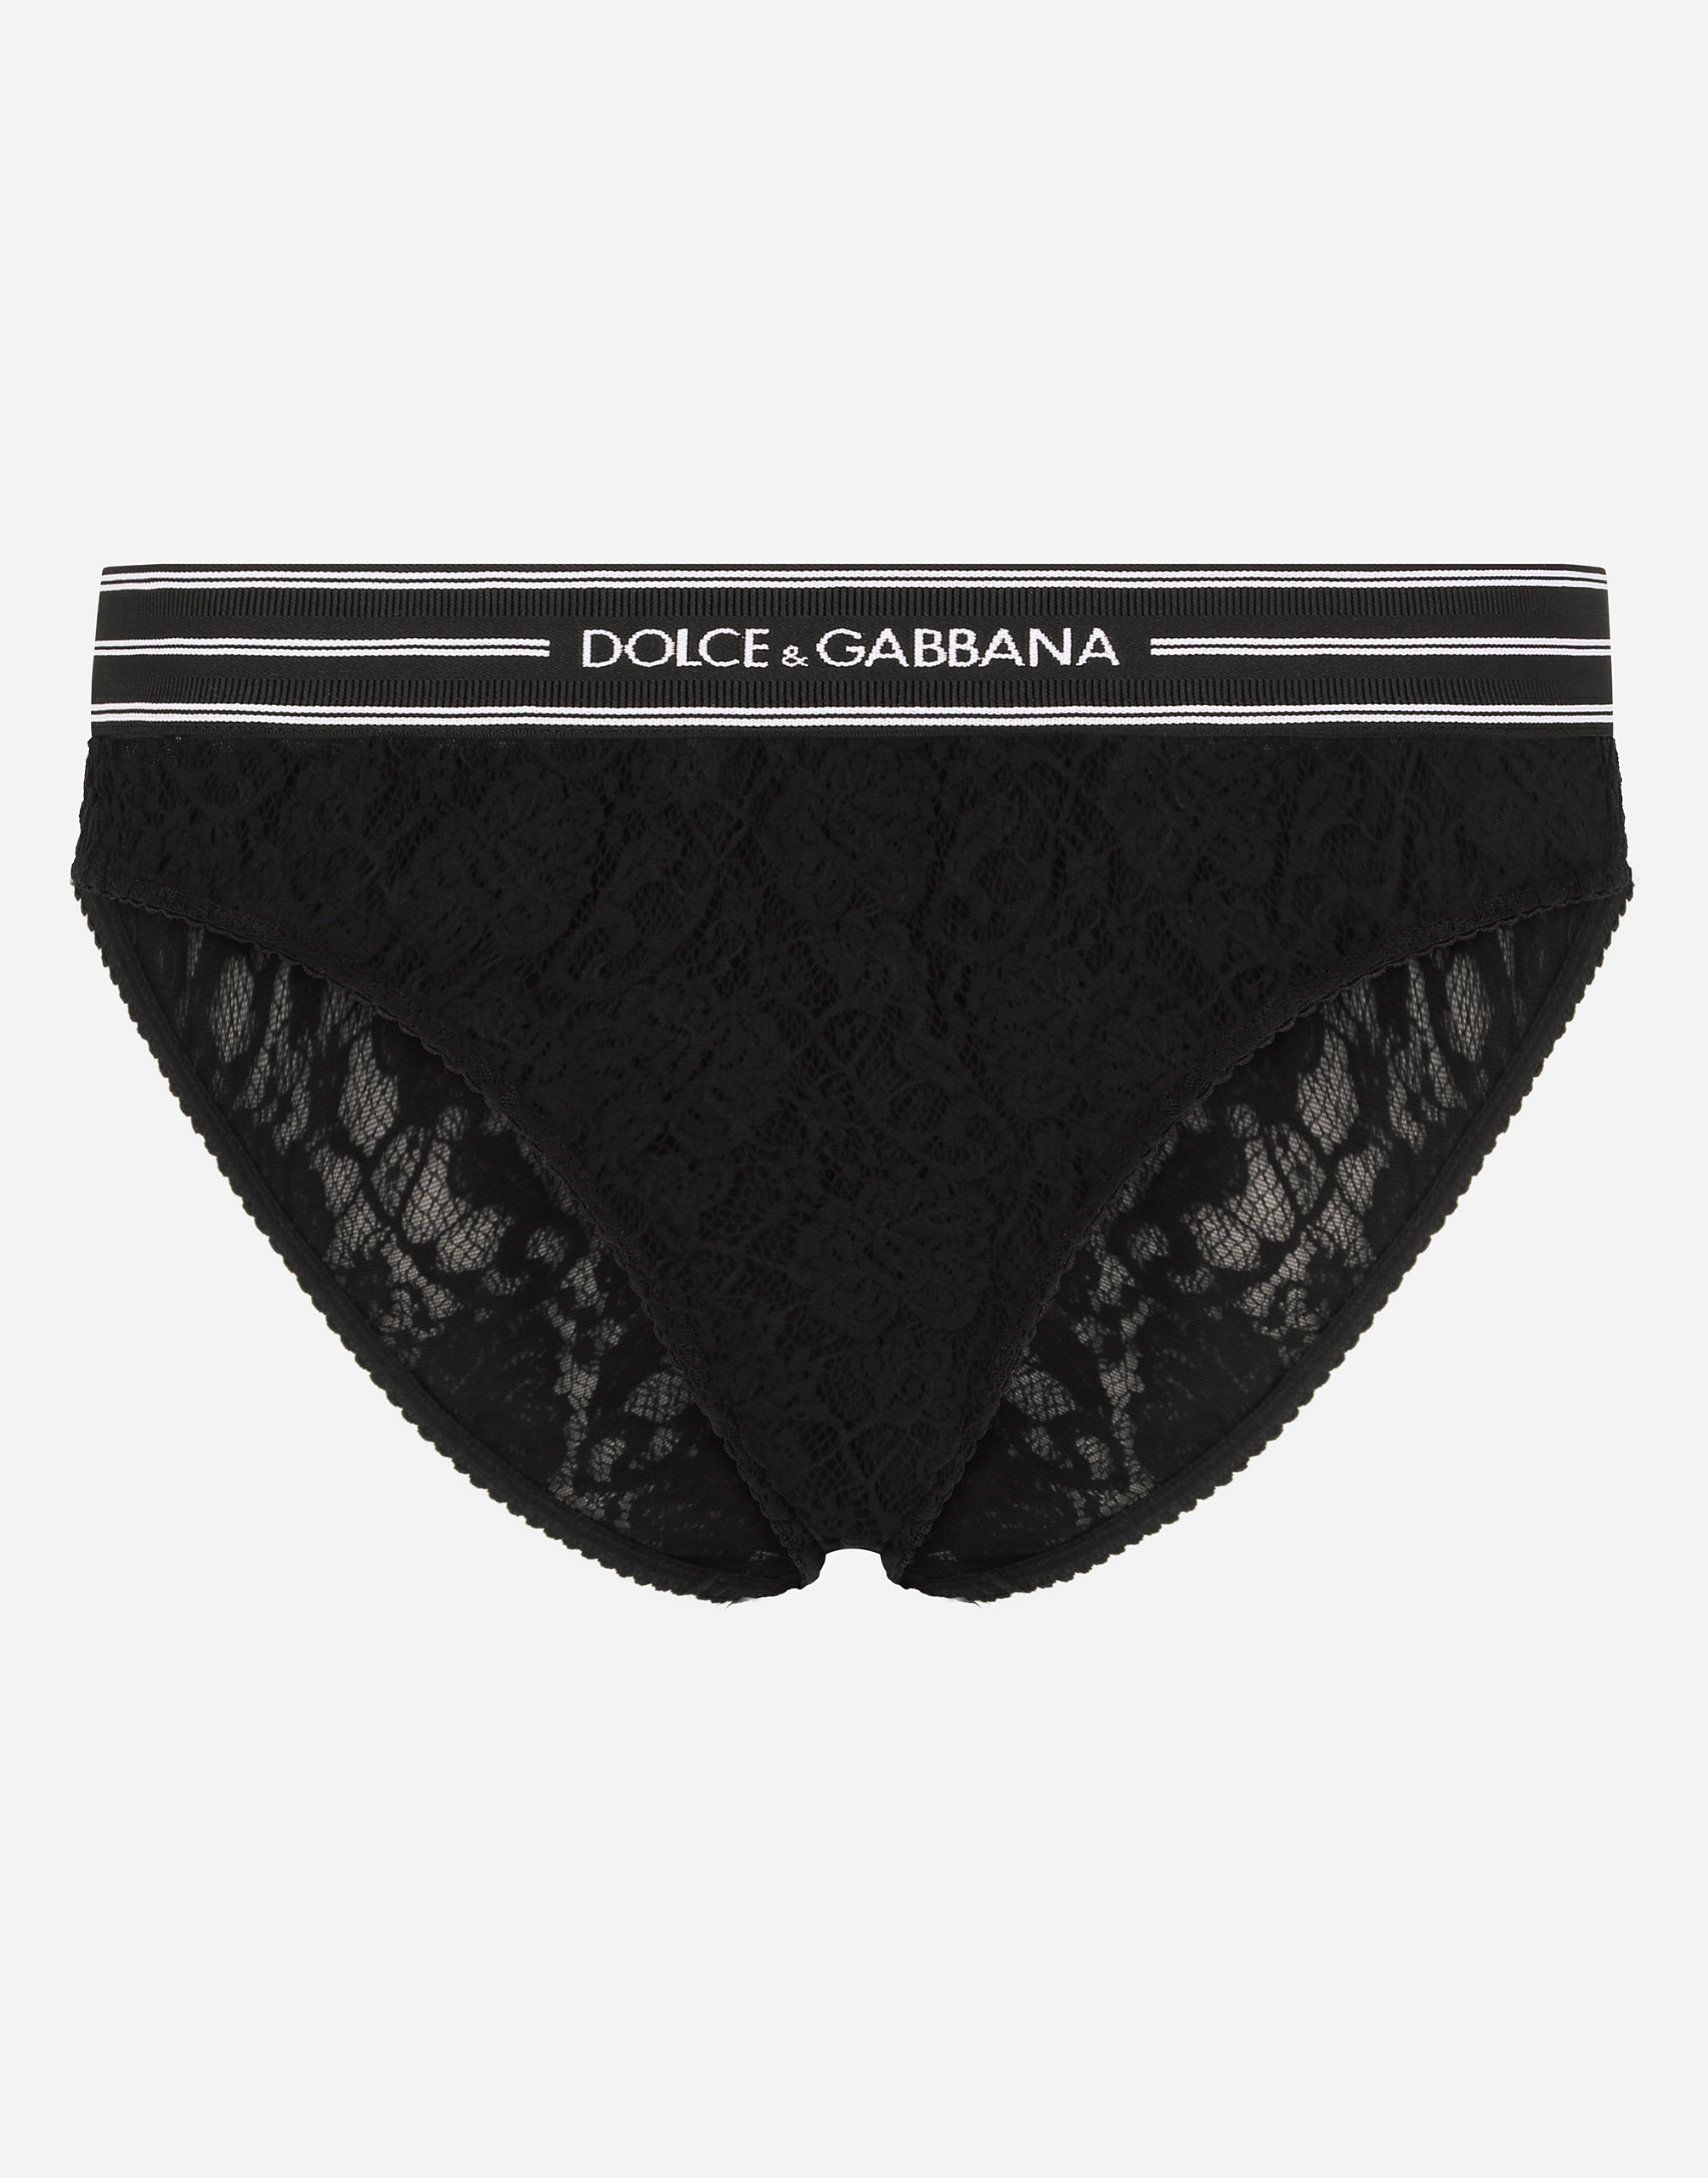 dolce and gabbana panties